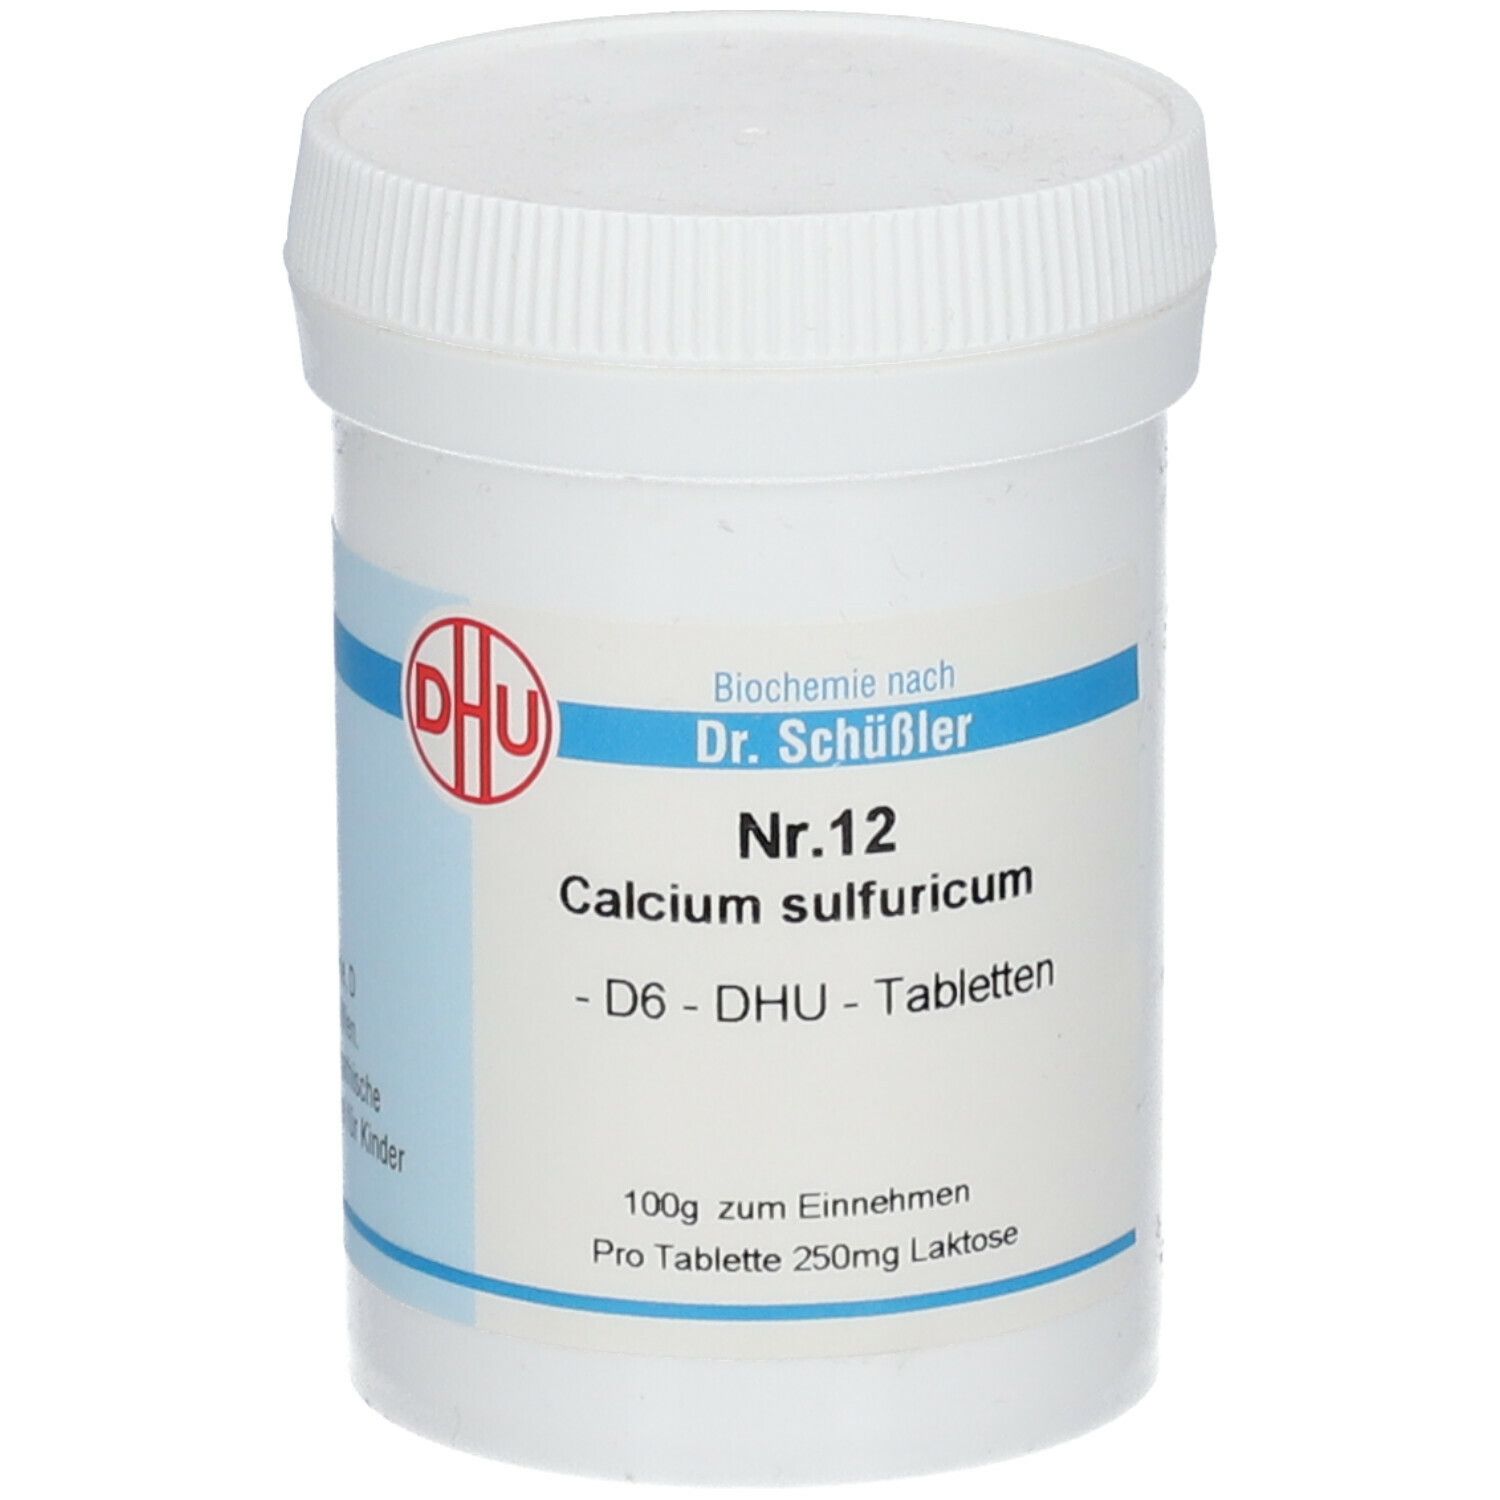 DHU Nr. 12 Calcium sulfuricum D6 nach Dr. Schüßler